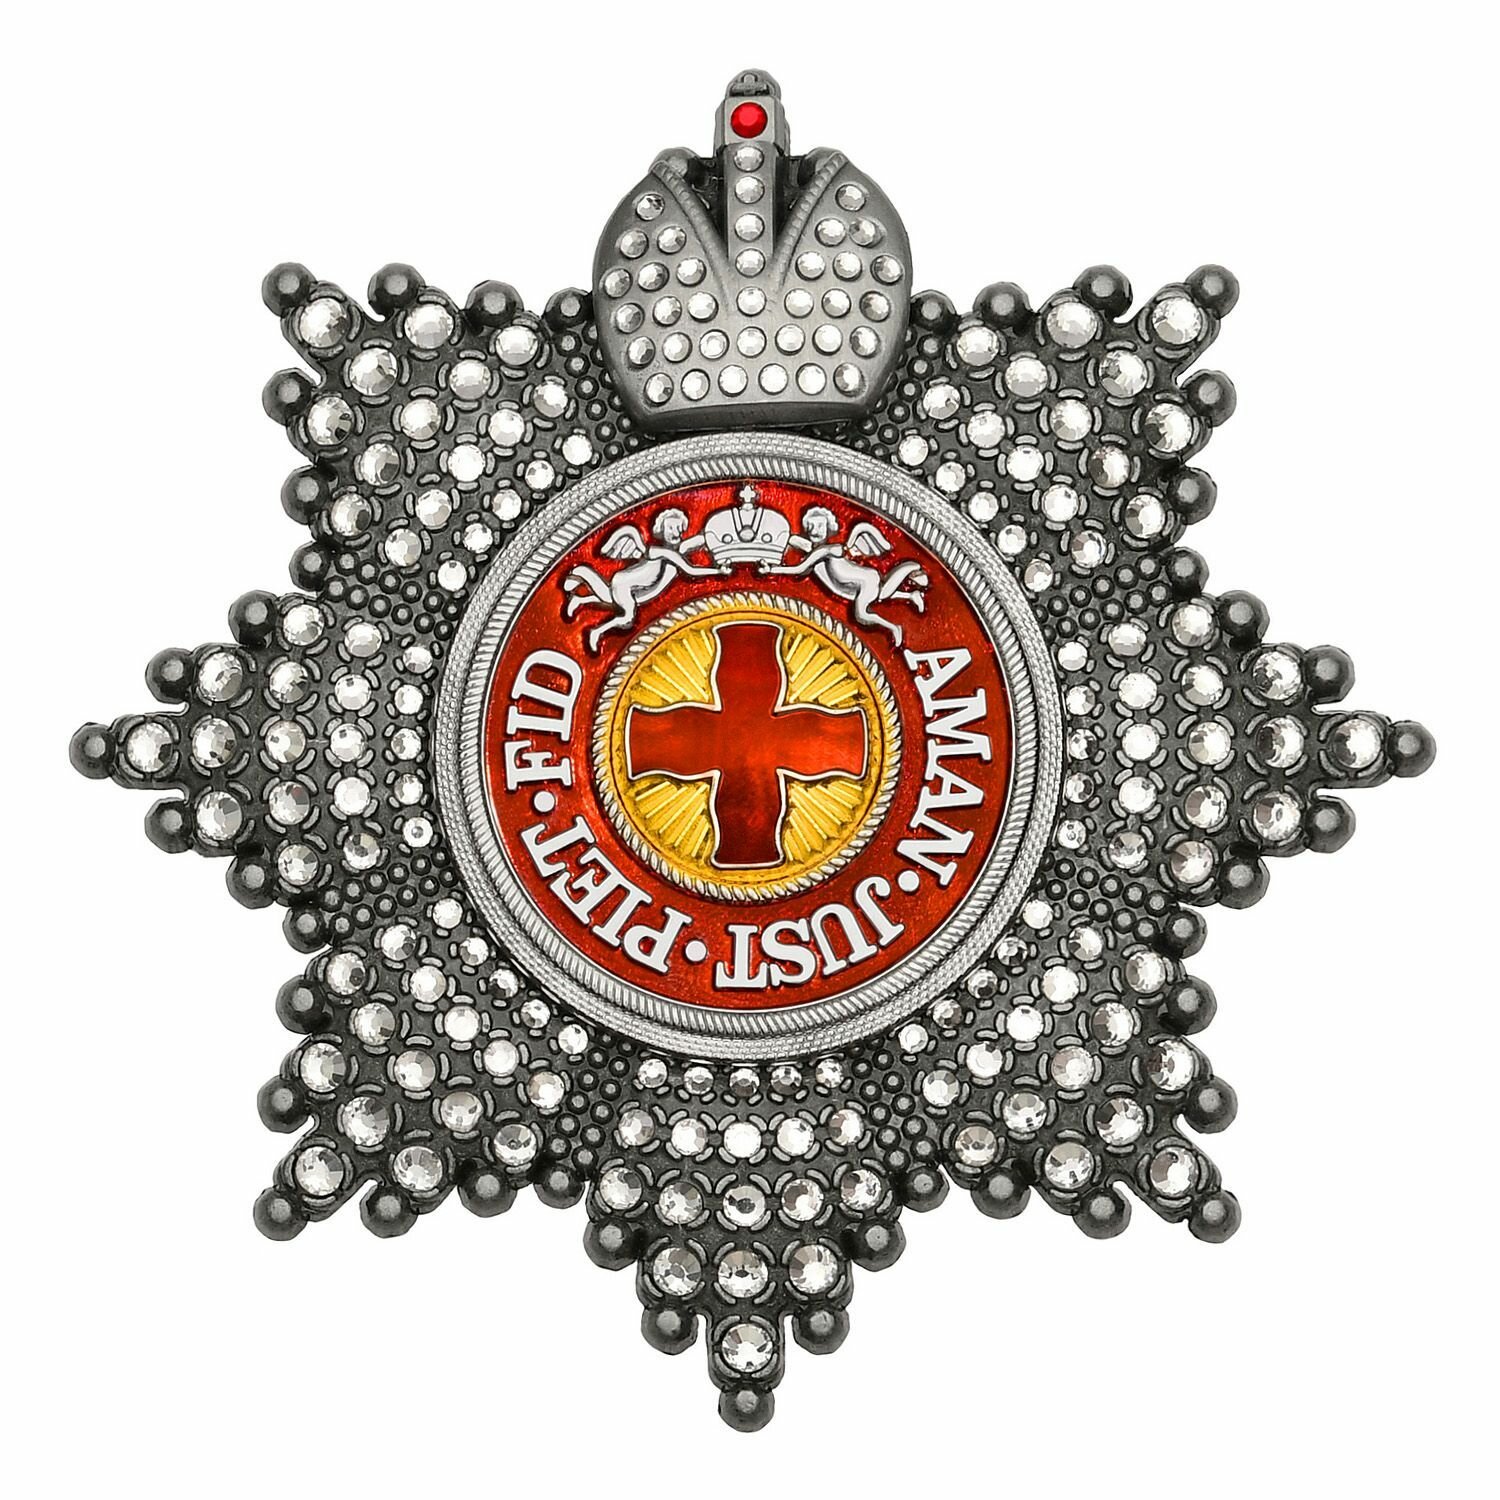 Звезда ордена Святой Анны с короной и стразами, полноразмерный муляж Российской империи